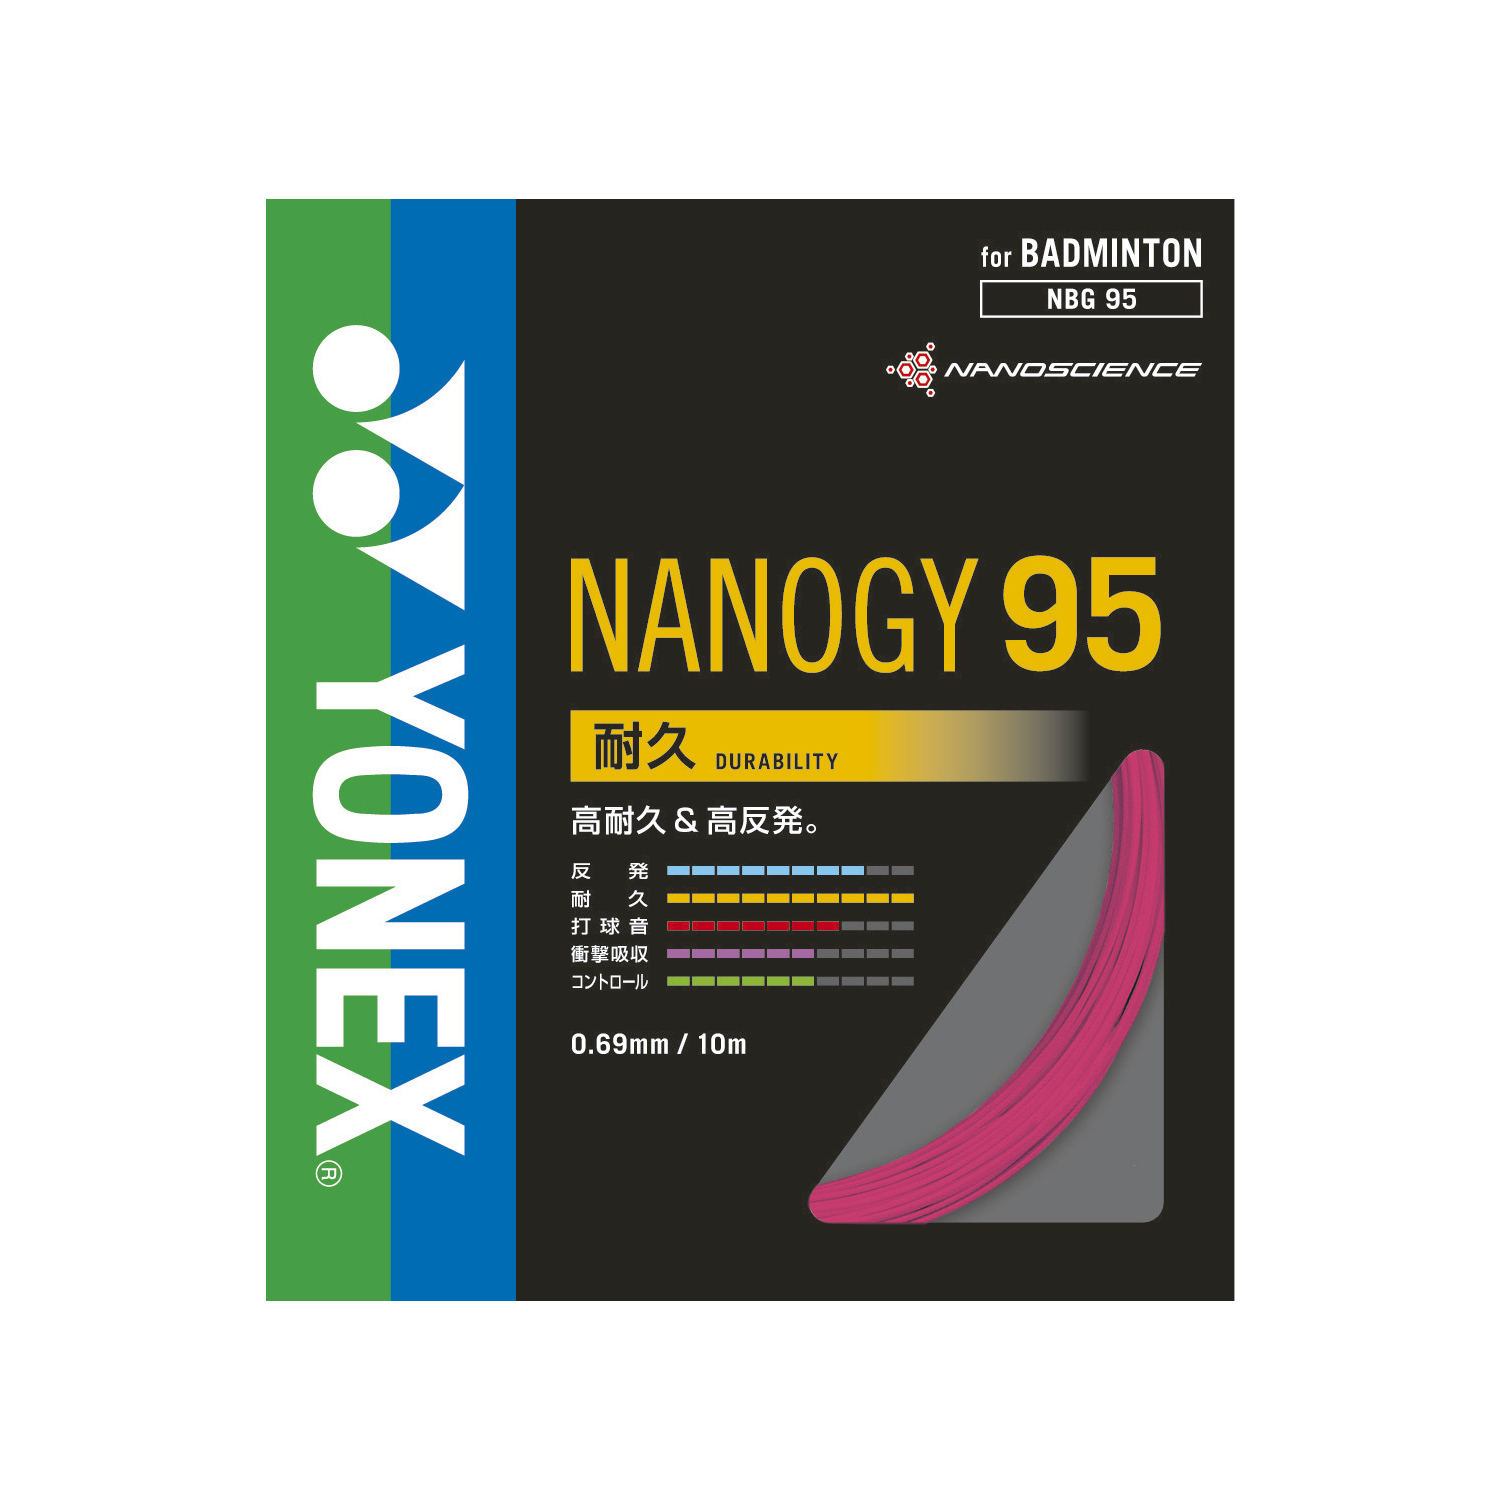 ナノジー 95|NBG95】ヨネックス(YONEX)公式オンラインショップ